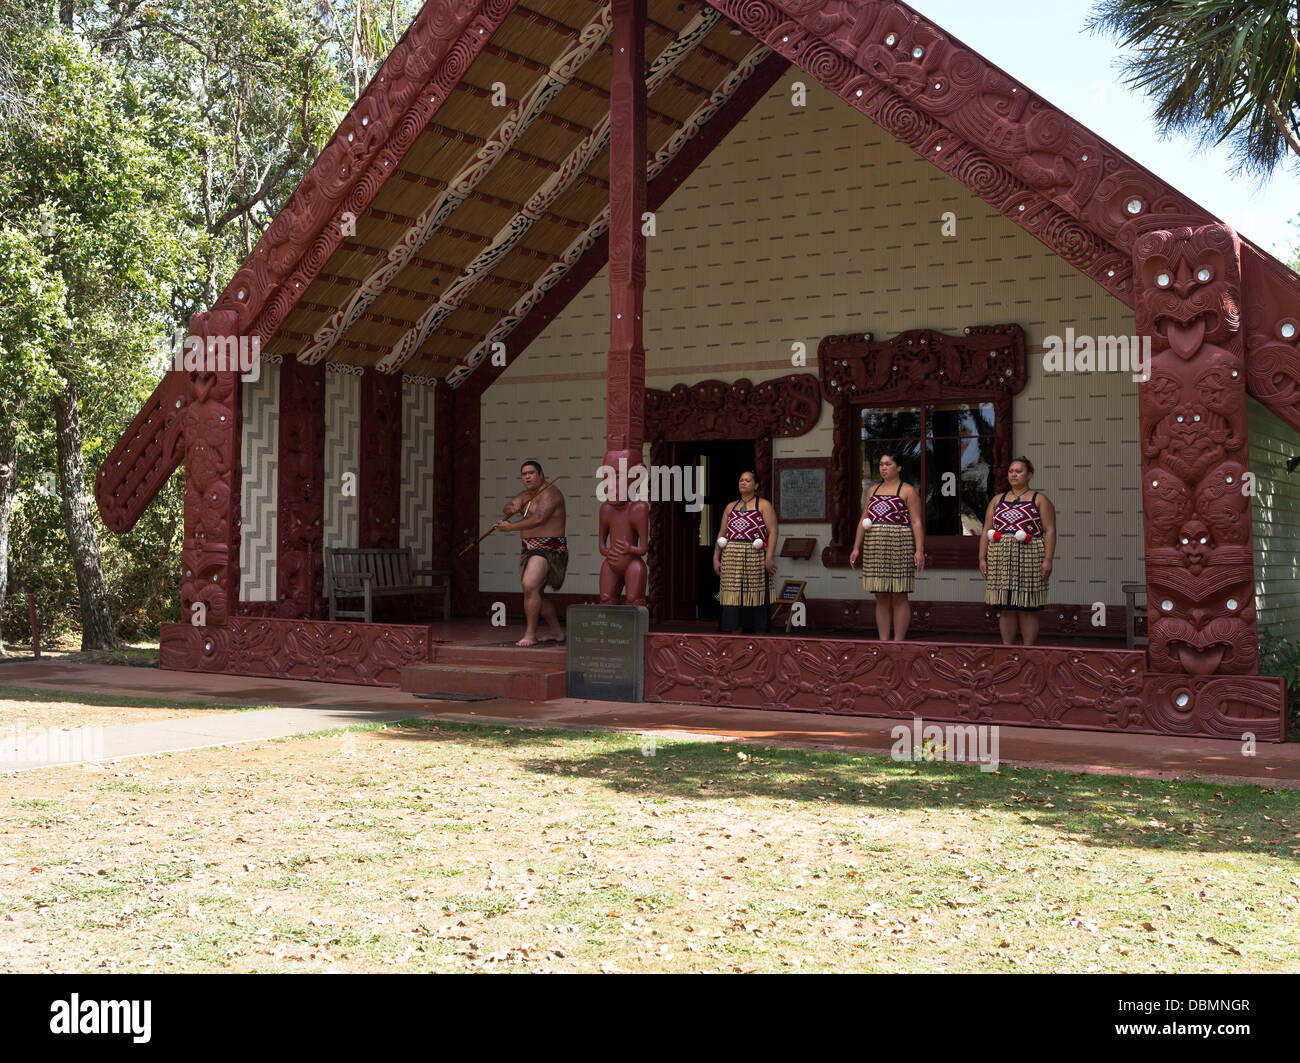 dh Waitangi Traité Grounds BAIE DES ÎLES NOUVELLE-ZÉLANDE Nouvelle-ZÉLANDE Accueil traditionnel Maoris Whare Runanga Maori maison de réunion culture des sculptures personnes Banque D'Images